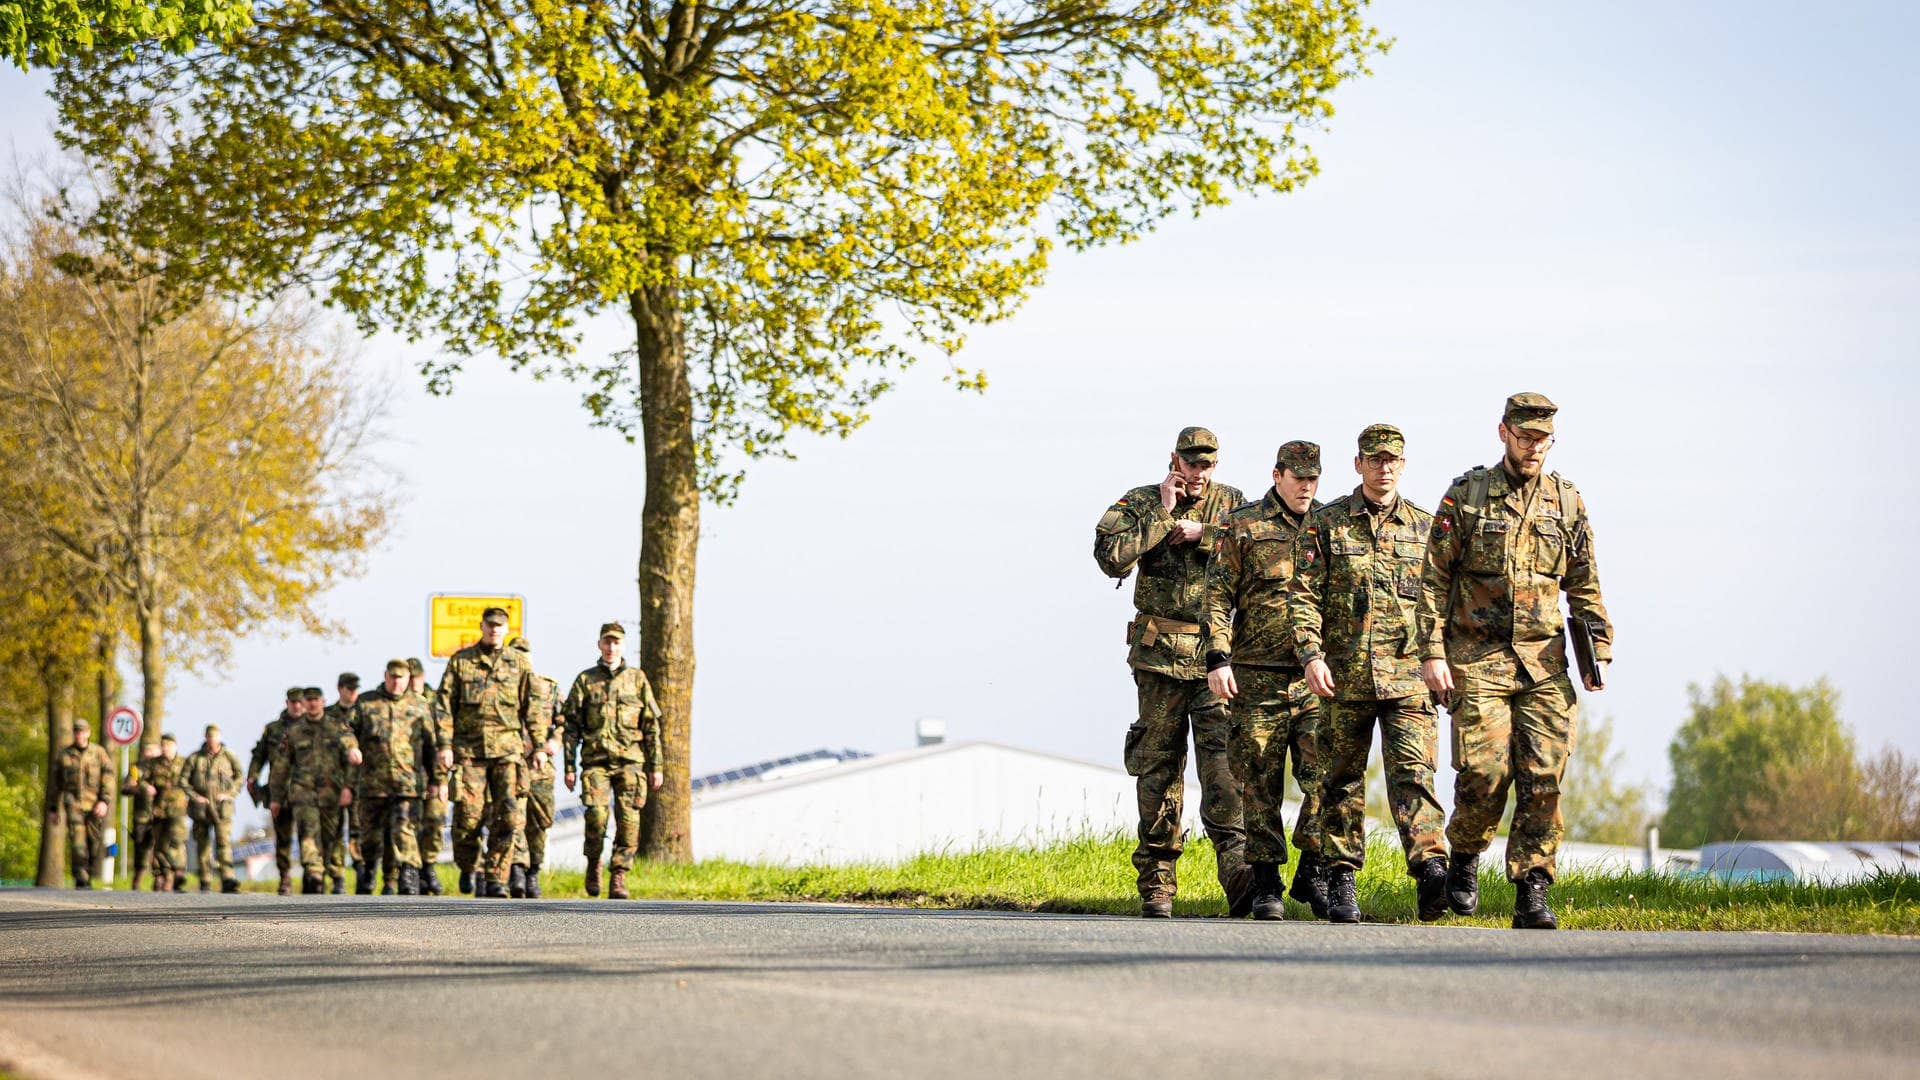 Rückkehr aus der Nacht: Soldaten der Bundeswehr gehen eine Landstraße entlang. Trotz der neuen Suchtaktik haben sie Arian nicht gefunden.